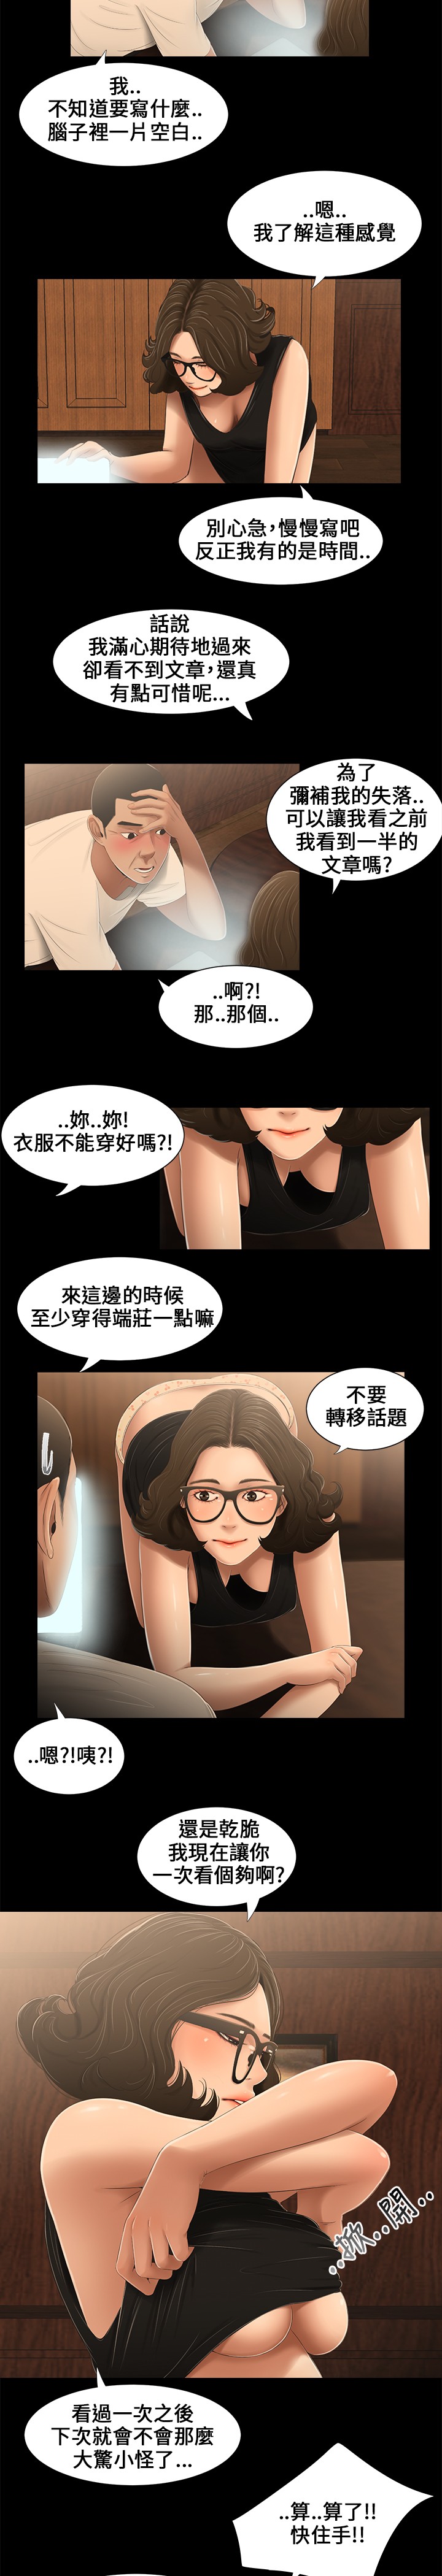 Three sisters 三姐妹Ch.13~19 (Chinese)中文 [愛摸] 三姐妹